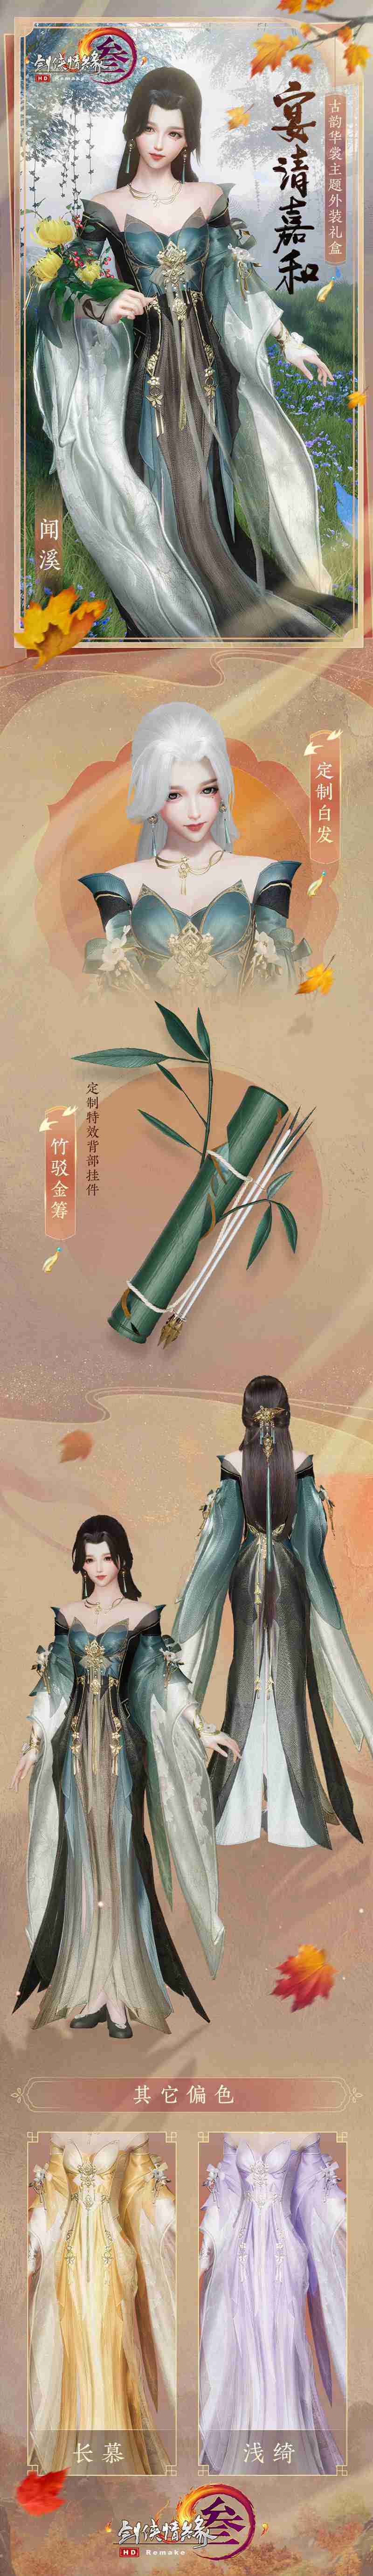 剑网3指尖江湖全新玩法前瞻 枫华谷副本正式上线